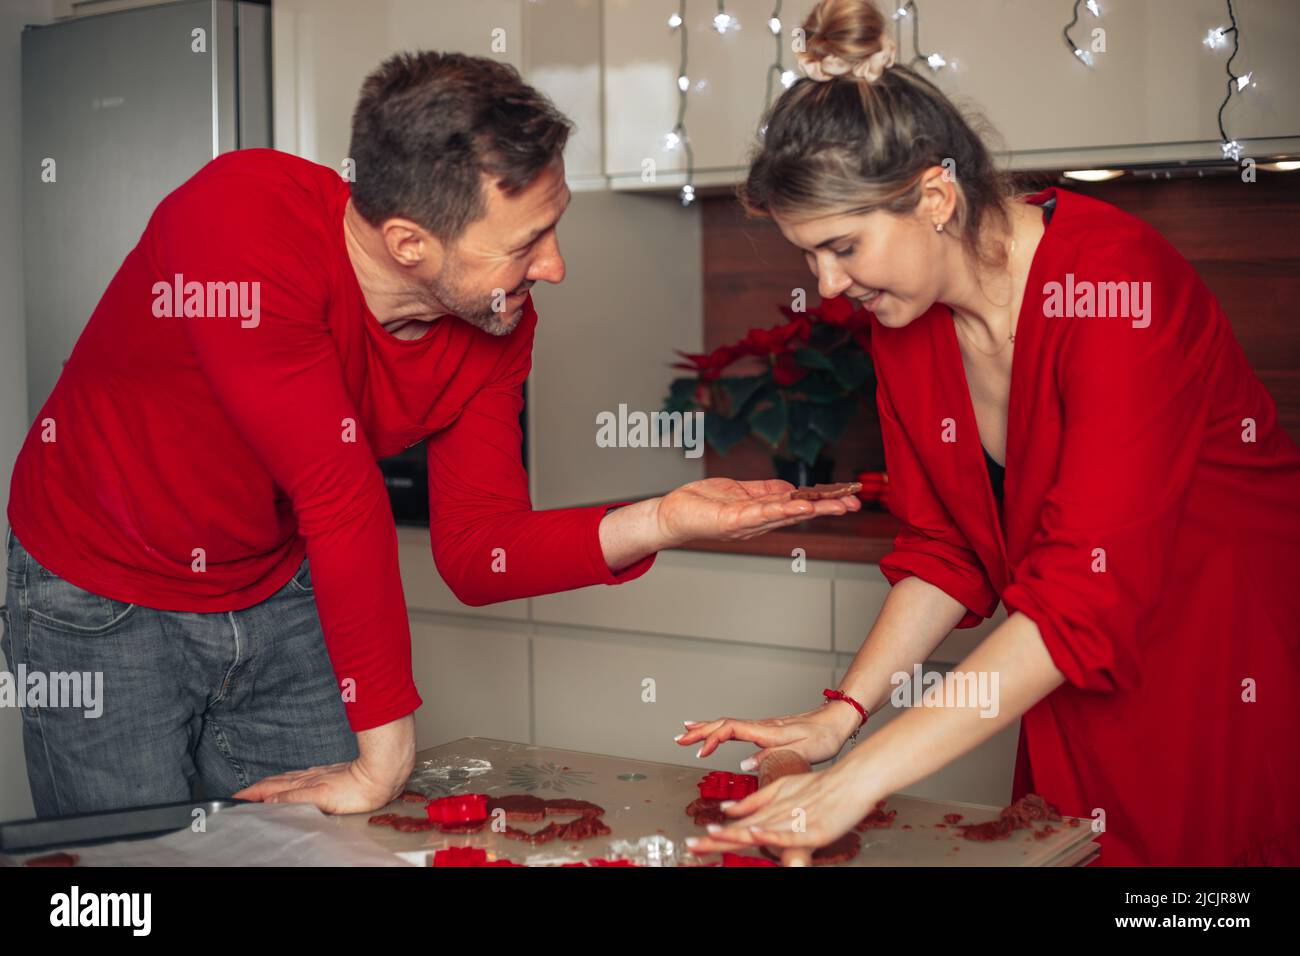 Mann und Frau haben Spaß beim Reden in der Küche. Viel zu backen, Kekse für Weihnachten, Weihnachtsmomente, glückliches Paar. Kochen zu Hause. Stockfoto